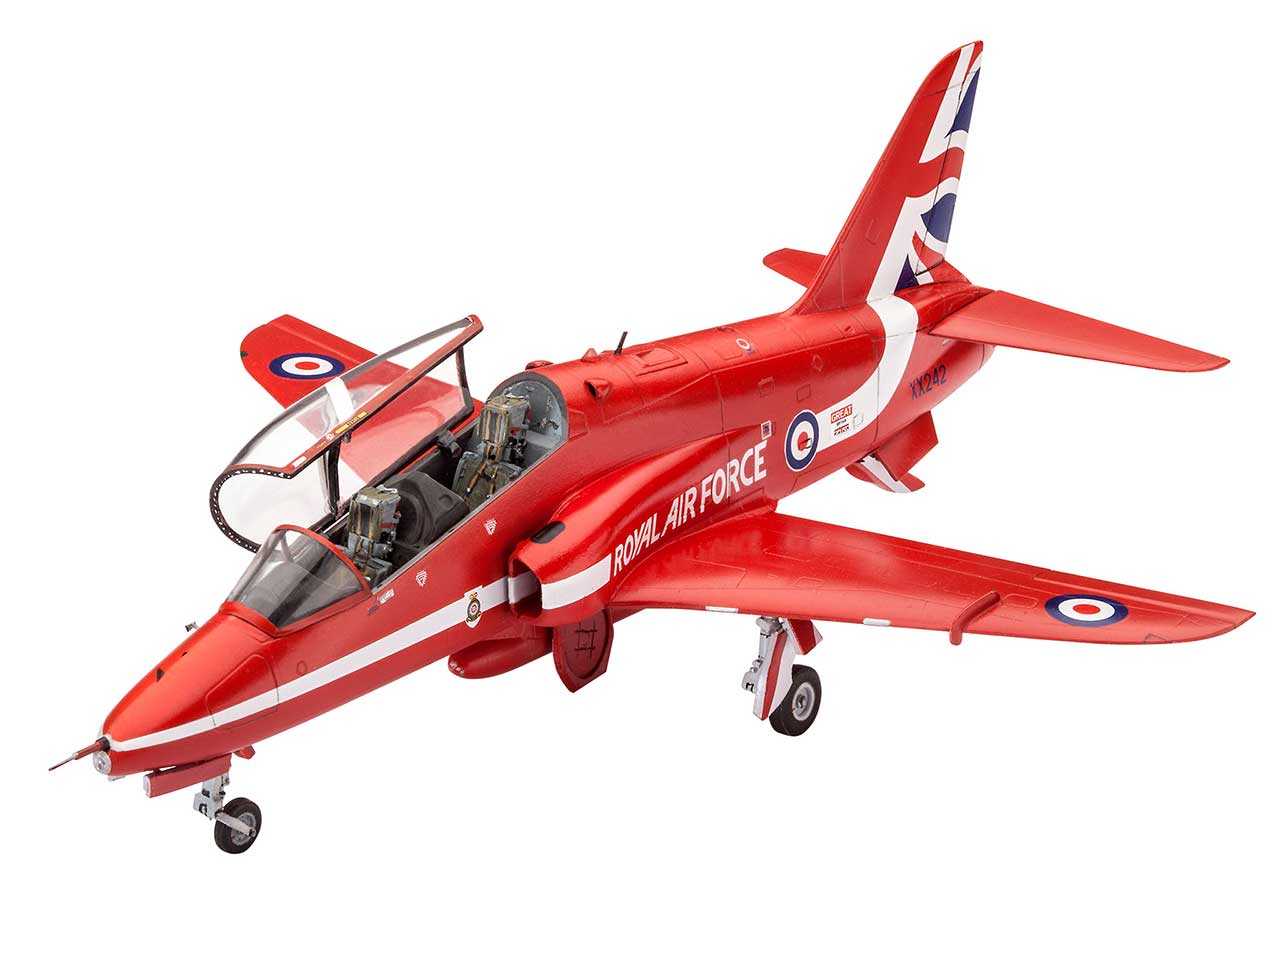 Revell Plastic ModelKit letadlo 04921 - BAe Hawk T.1 Red Arrows (1:72)